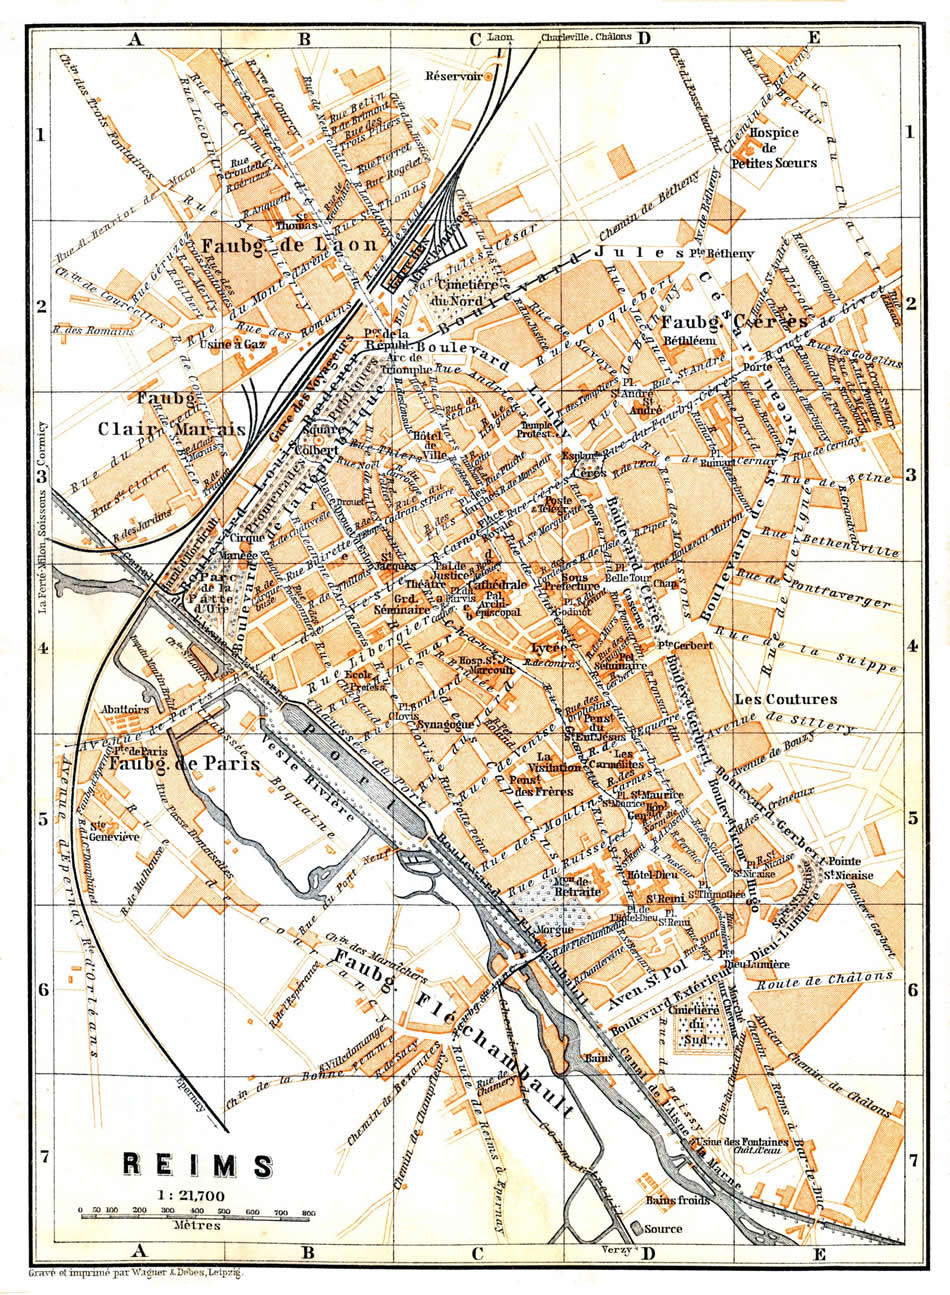 Reims karte 1899